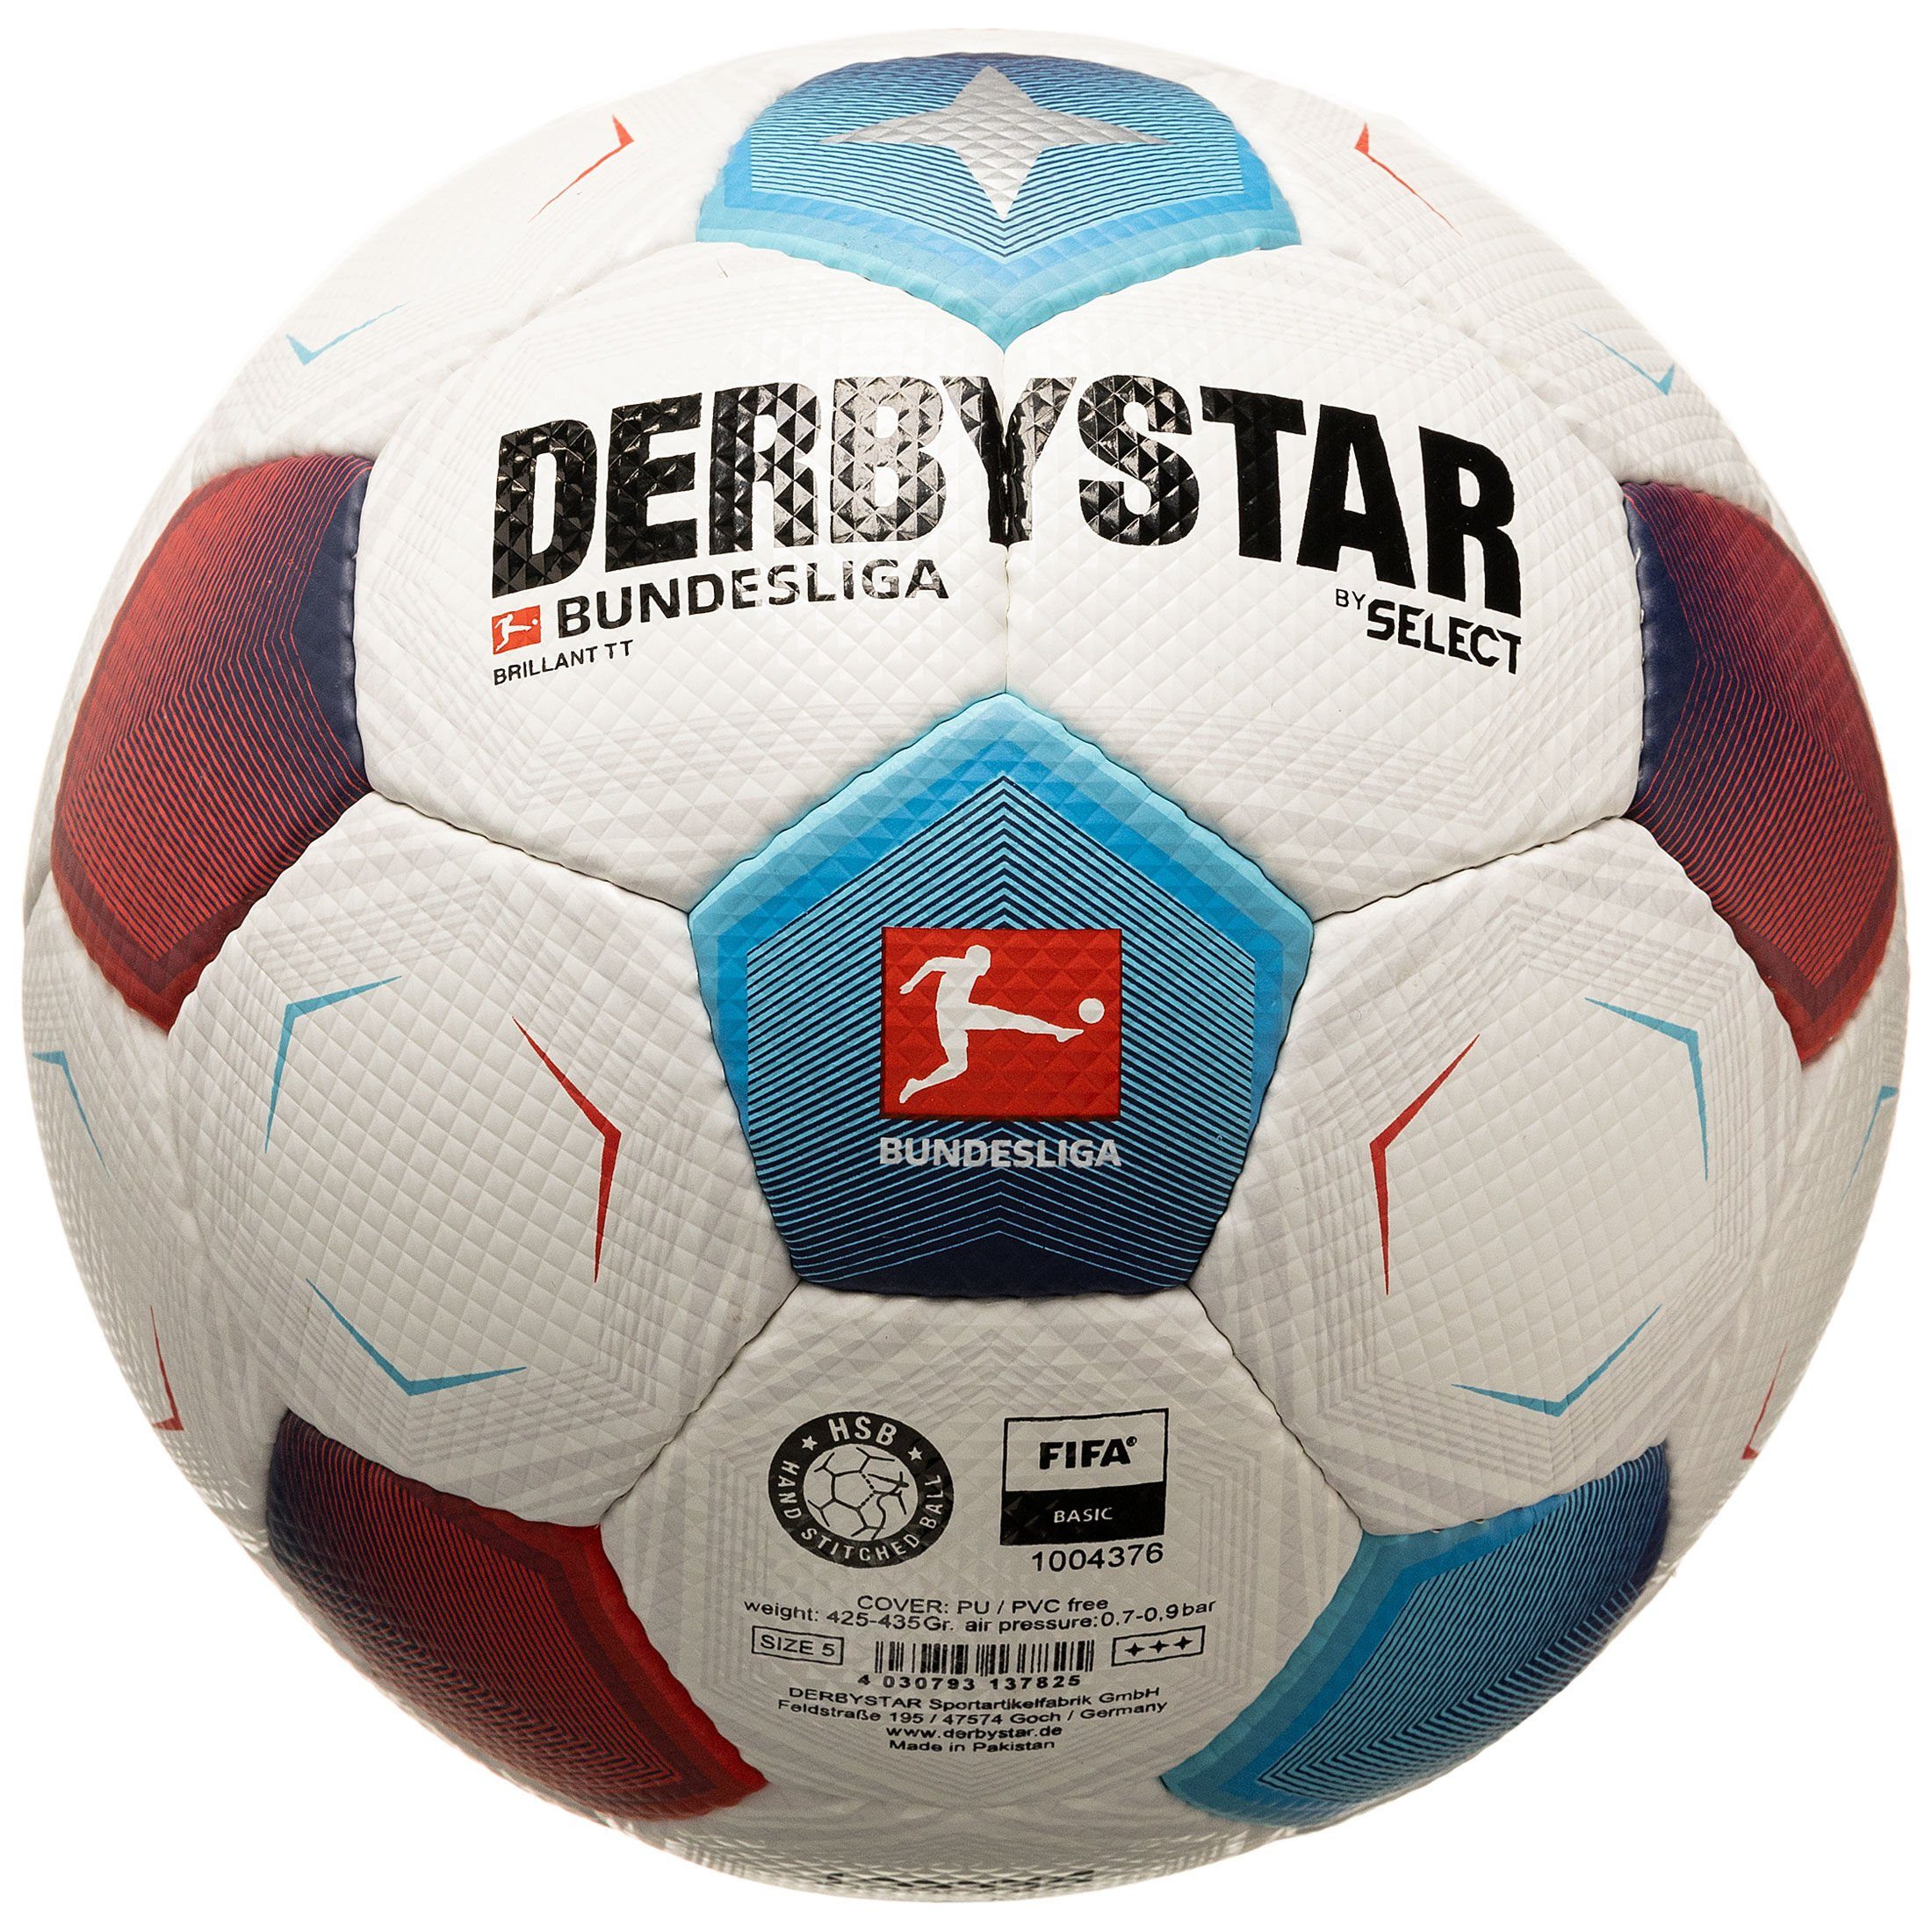 Derbystar Bundesliga v23 Brillant Bundesliga TT Fußball Fußball